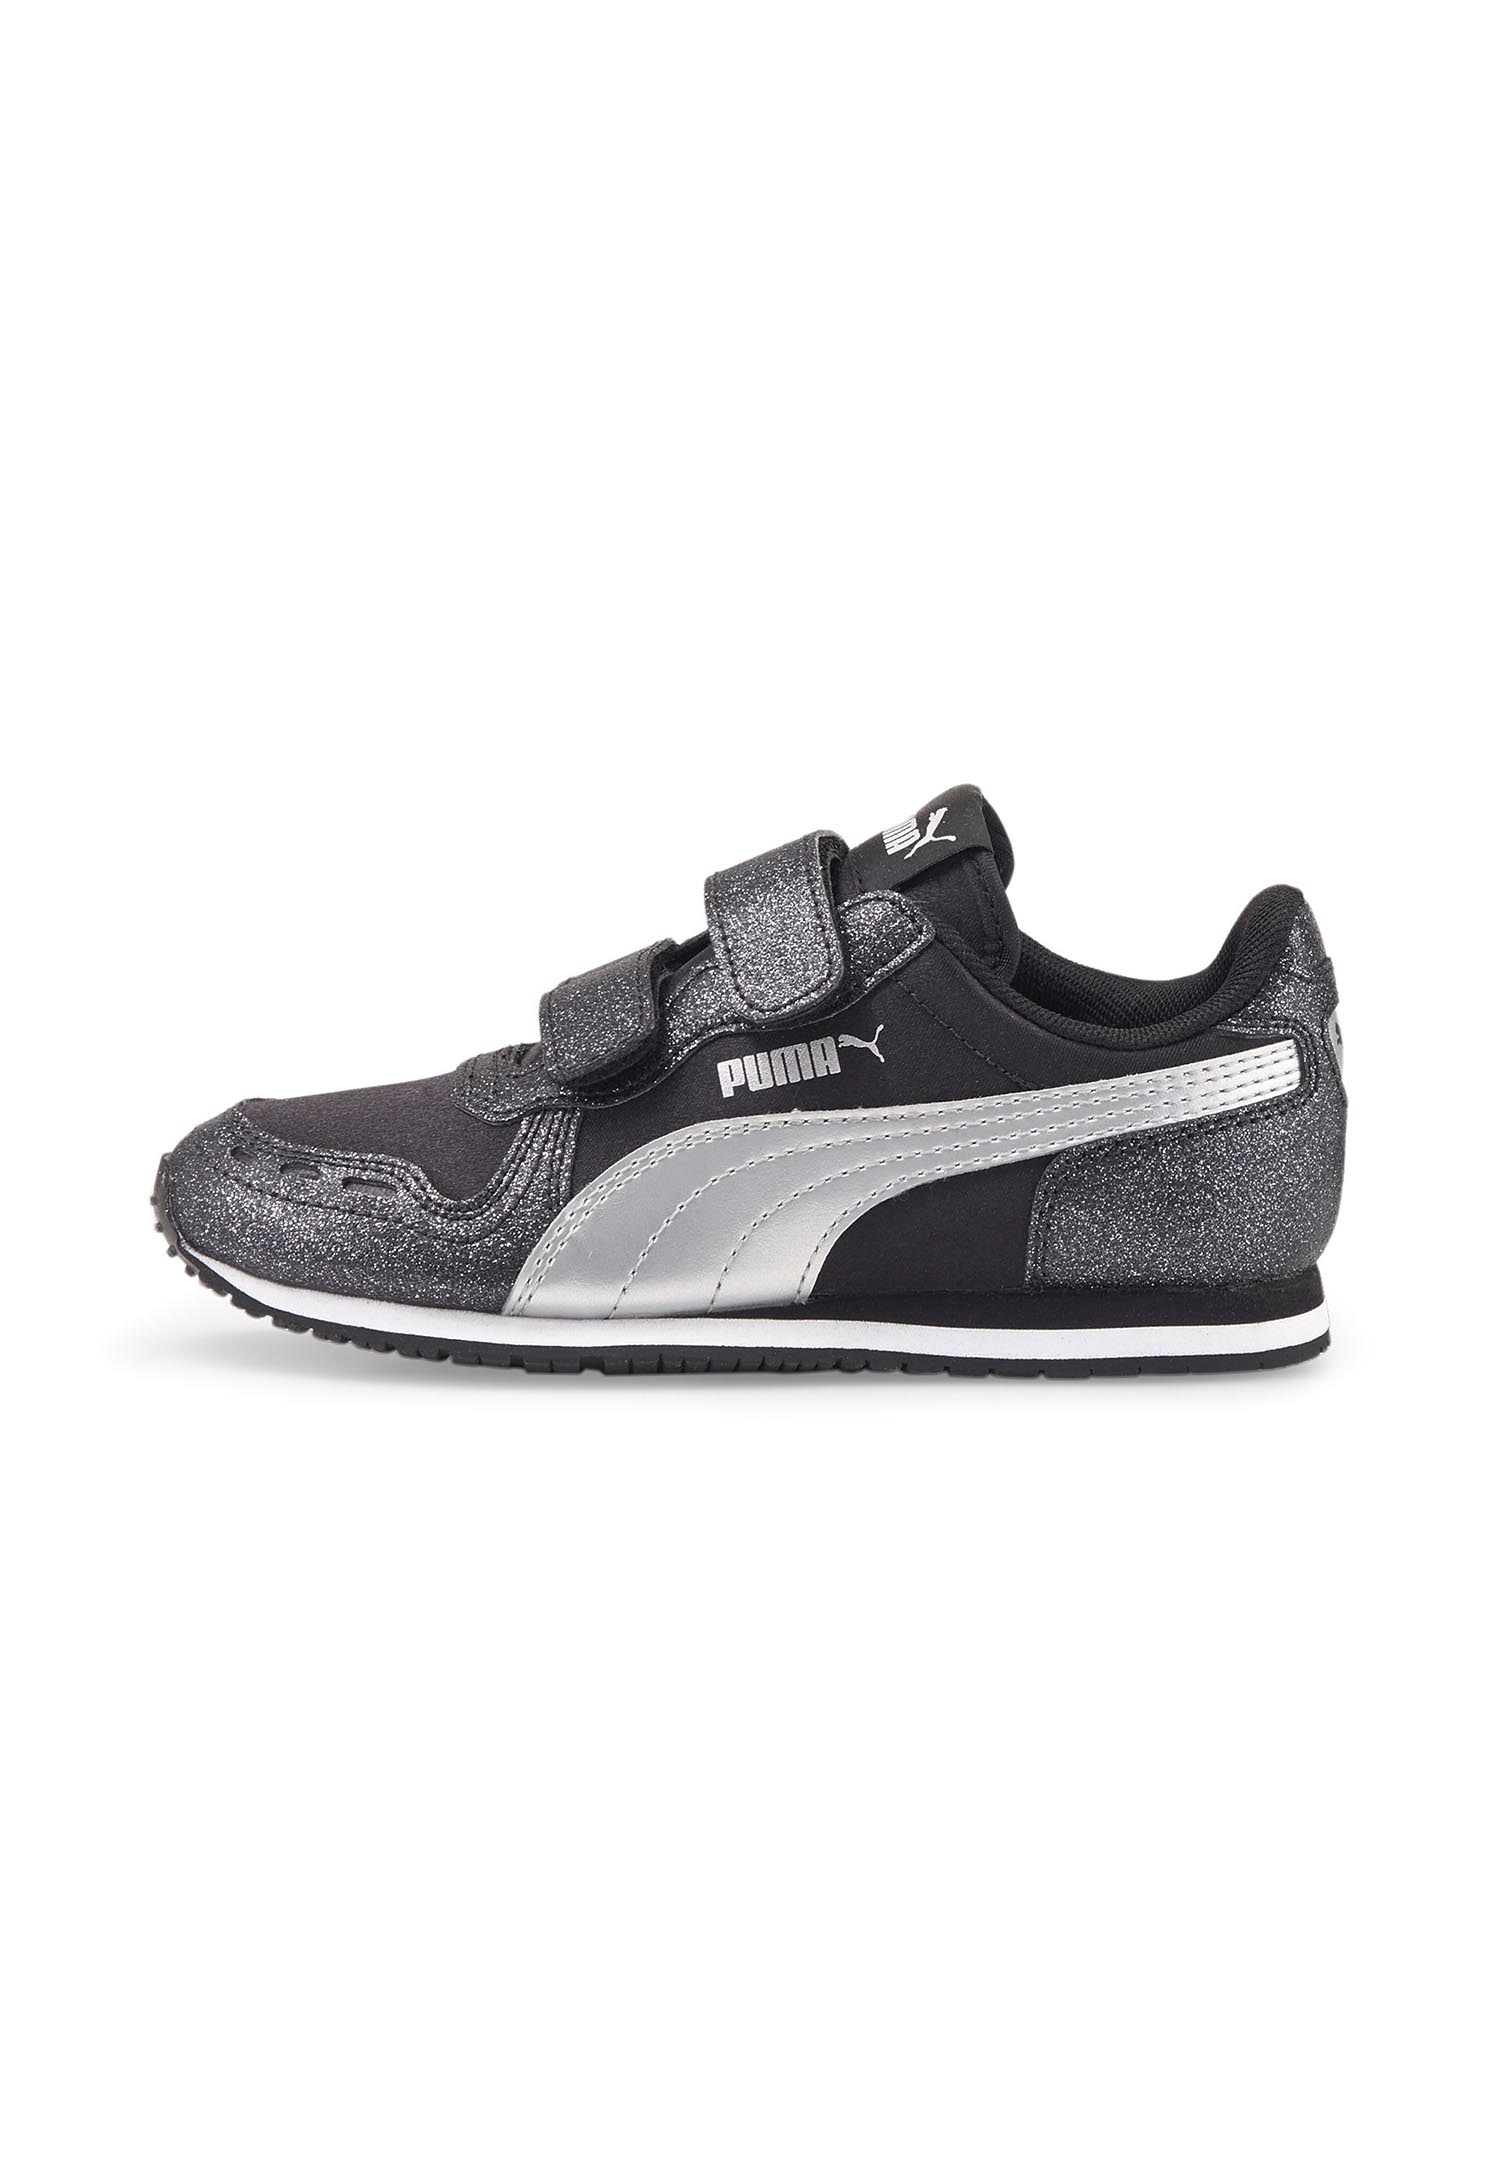 PUMA Cabana Racer Glitz V PS Kids Sneaker Schuhe Mädchen black 370985 10